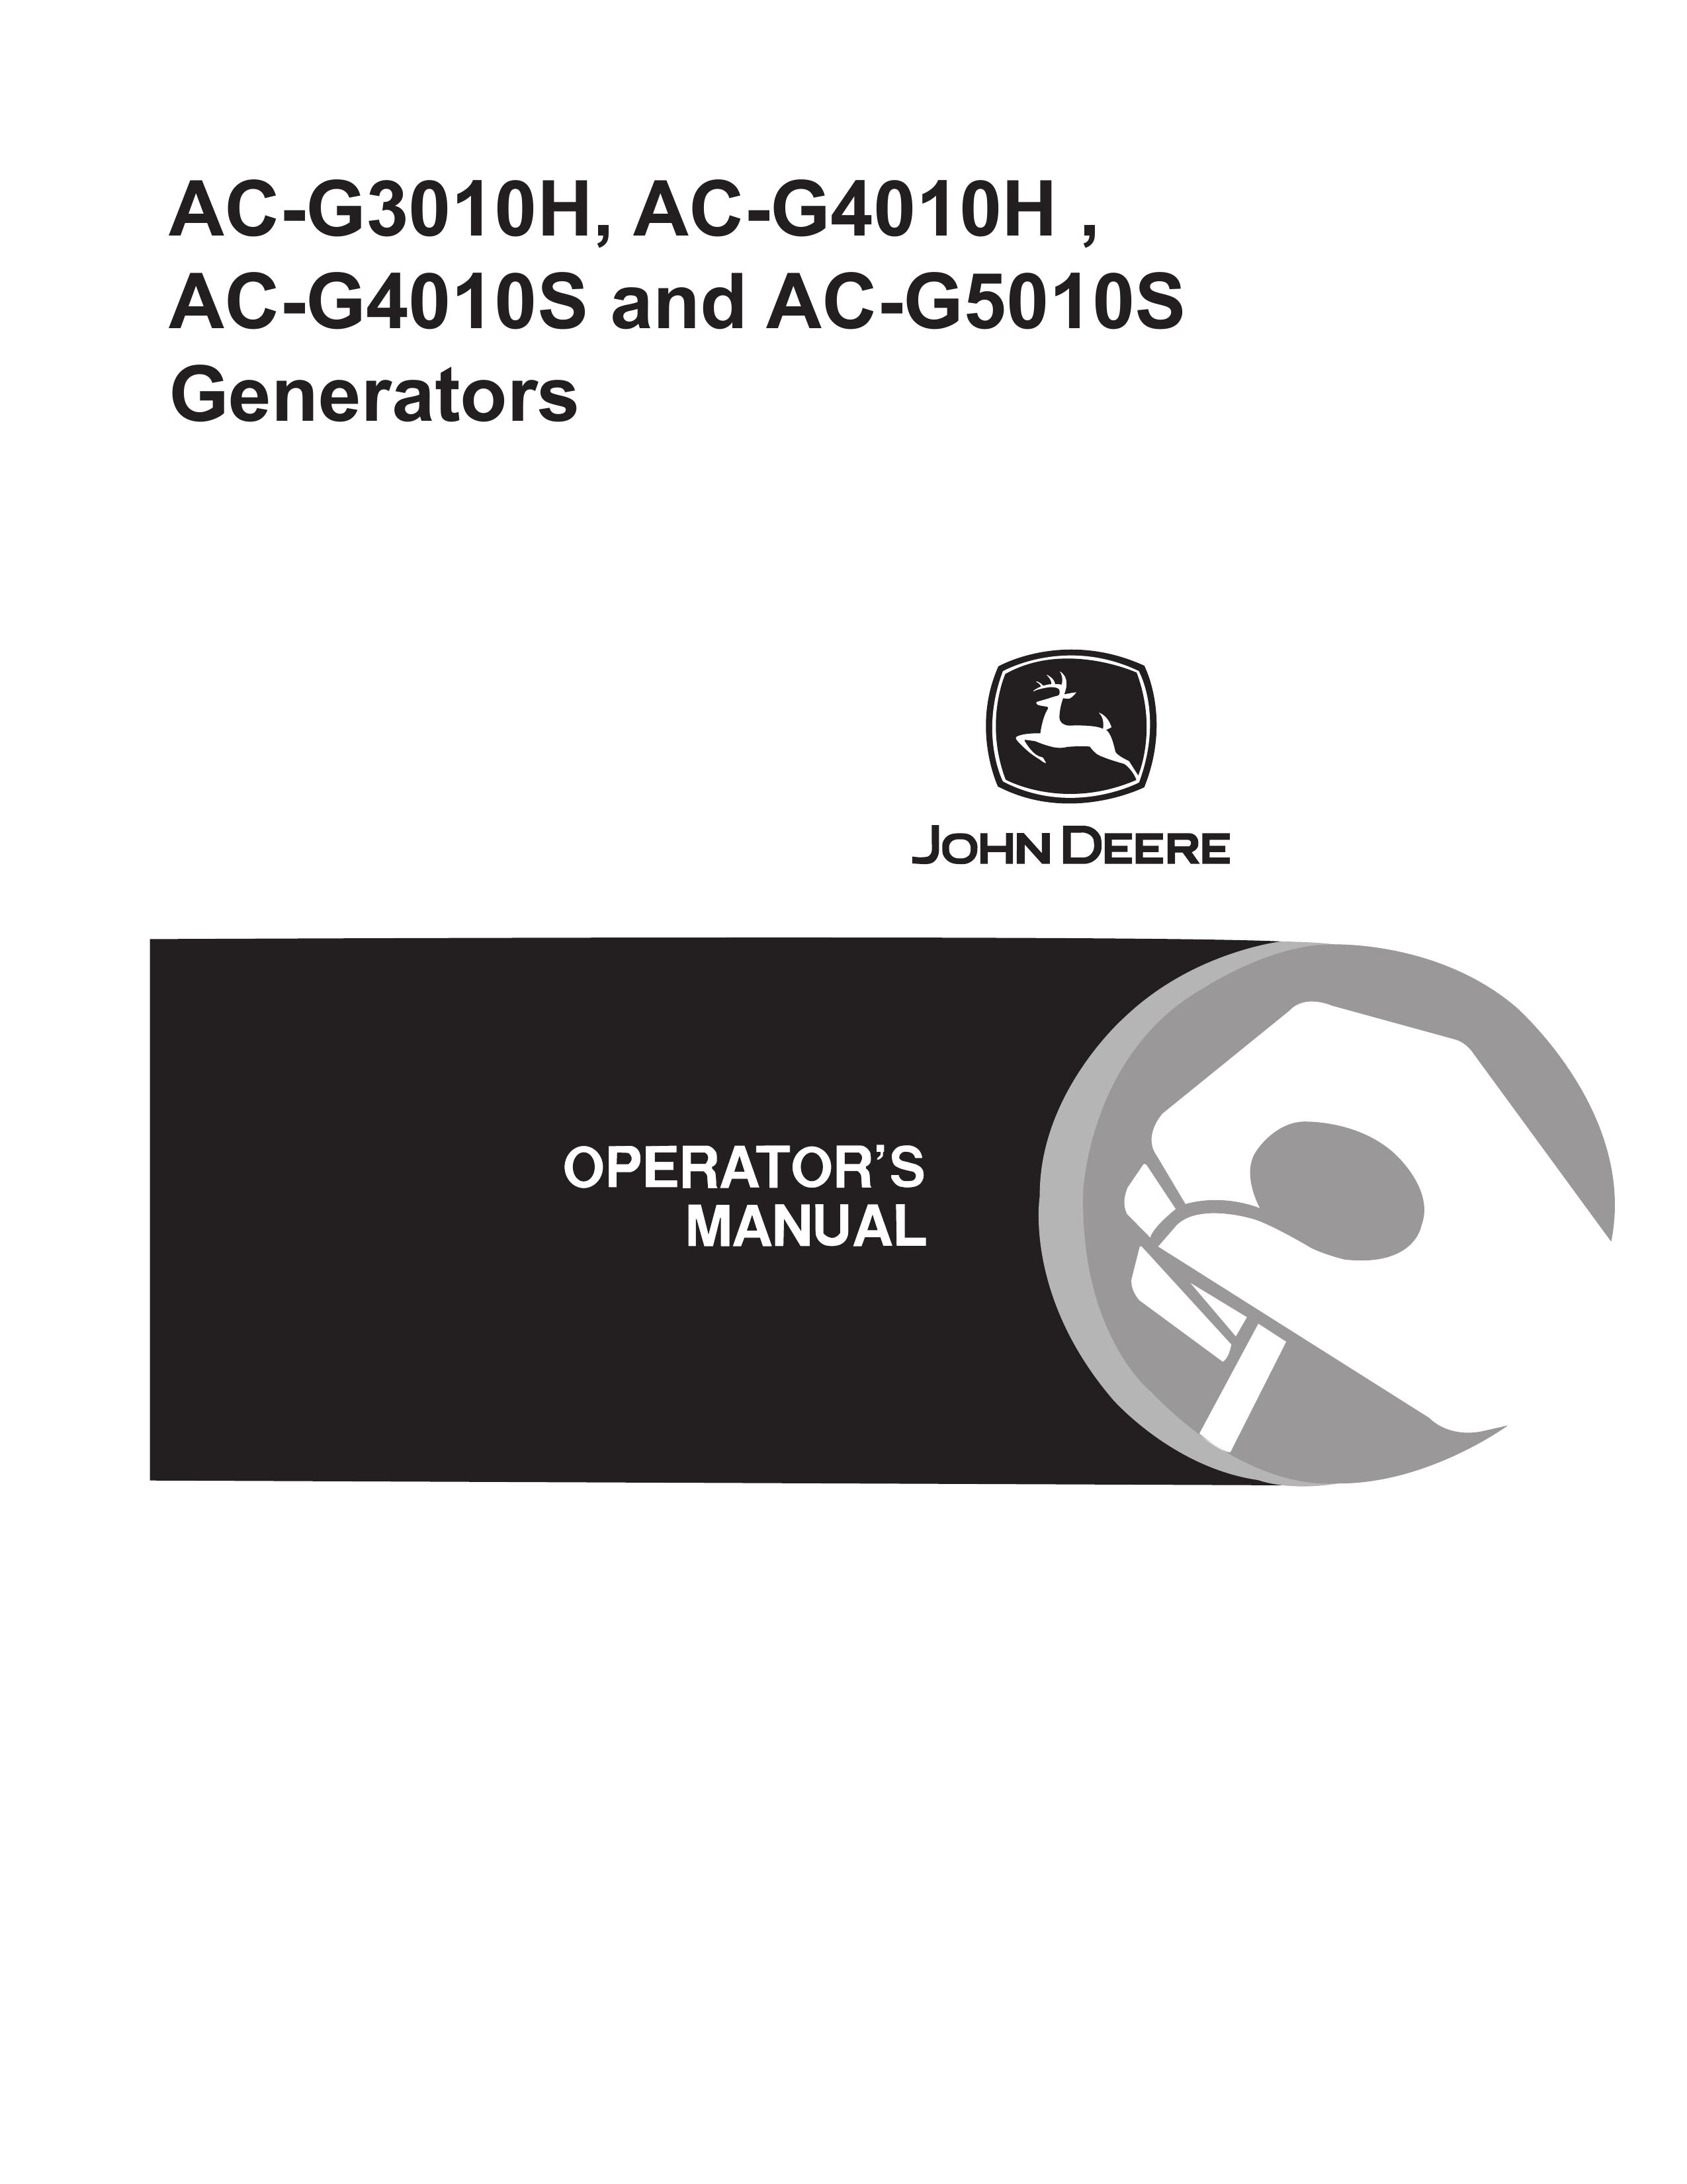 John Deere AC-G3010H Portable Generator User Manual